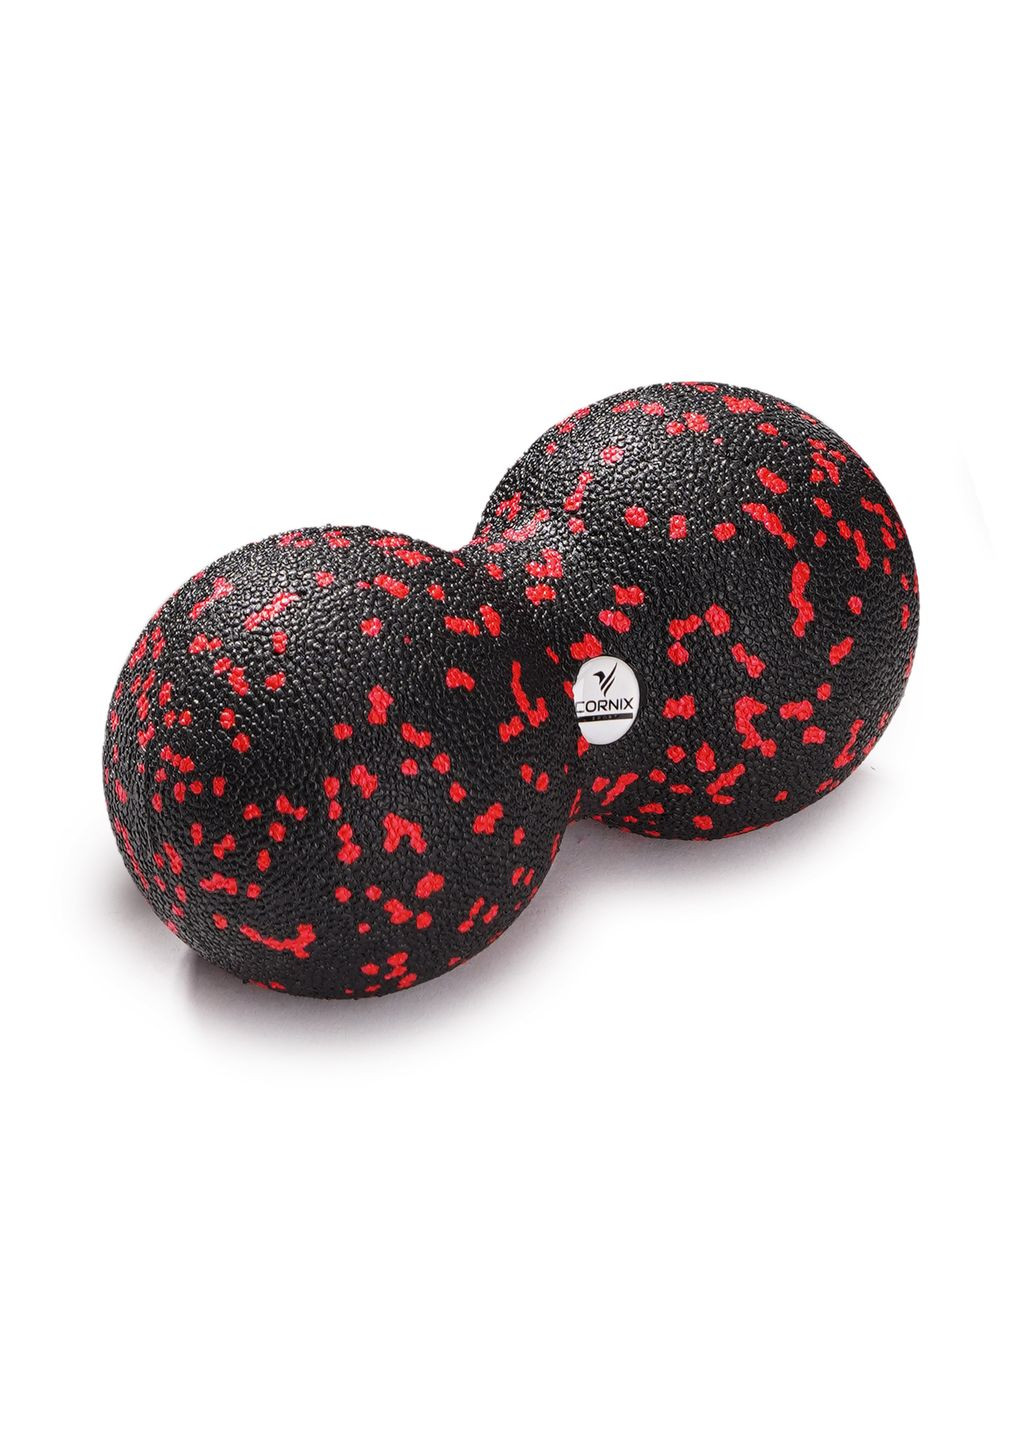 Масажний м'яч подвійний EPP DuoBall 8 x 16 см XR0124 Cornix xr-0124 (275654212)